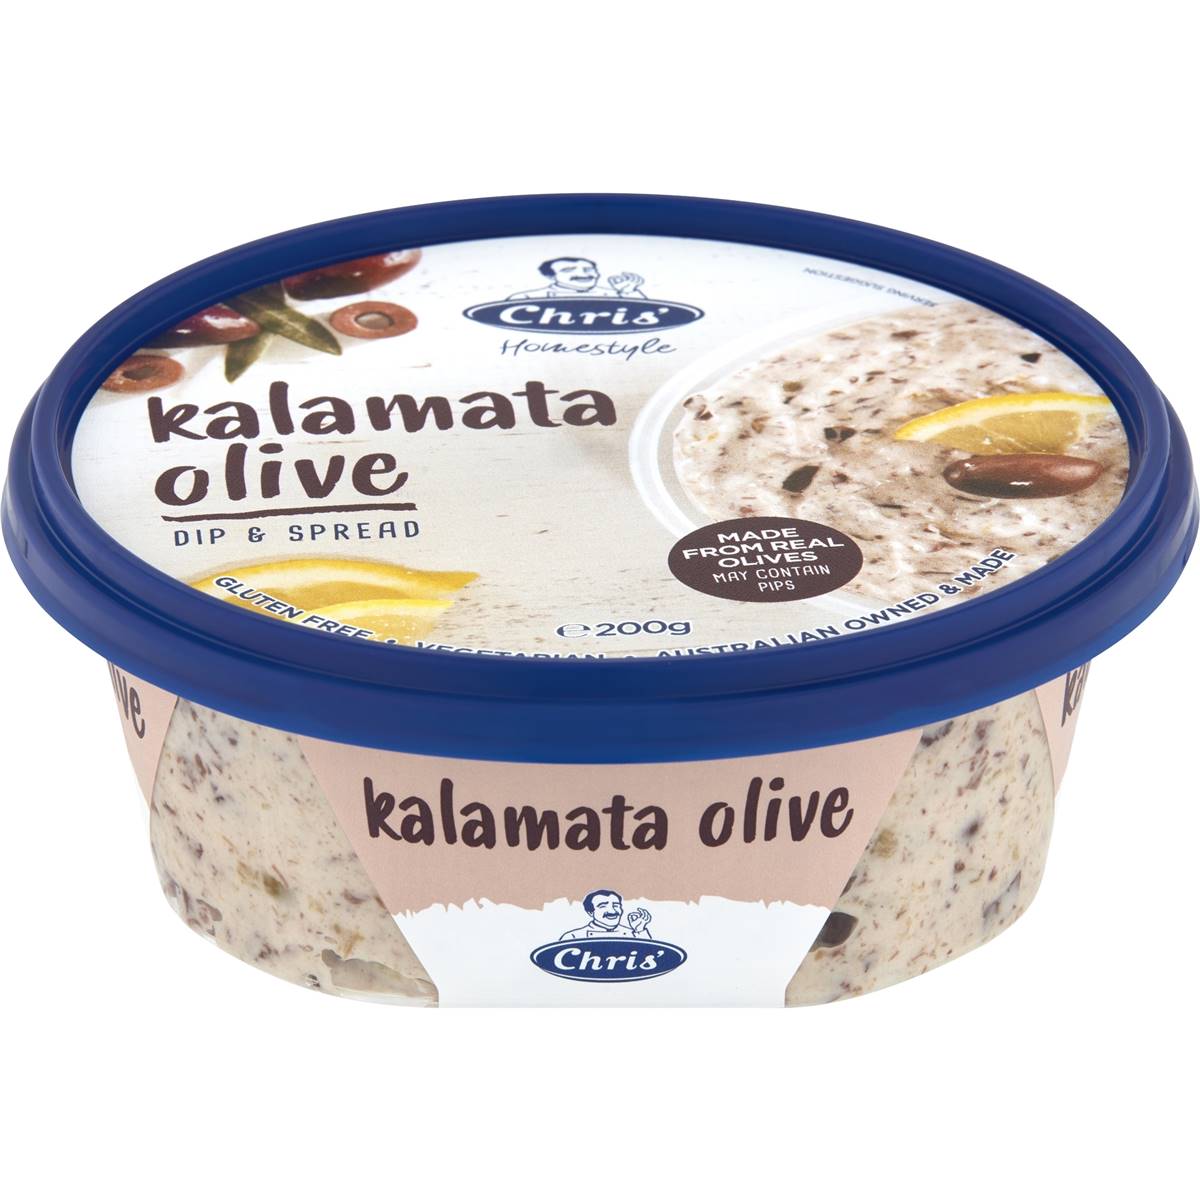 Calories in Chris' Kalamata Olive Dip